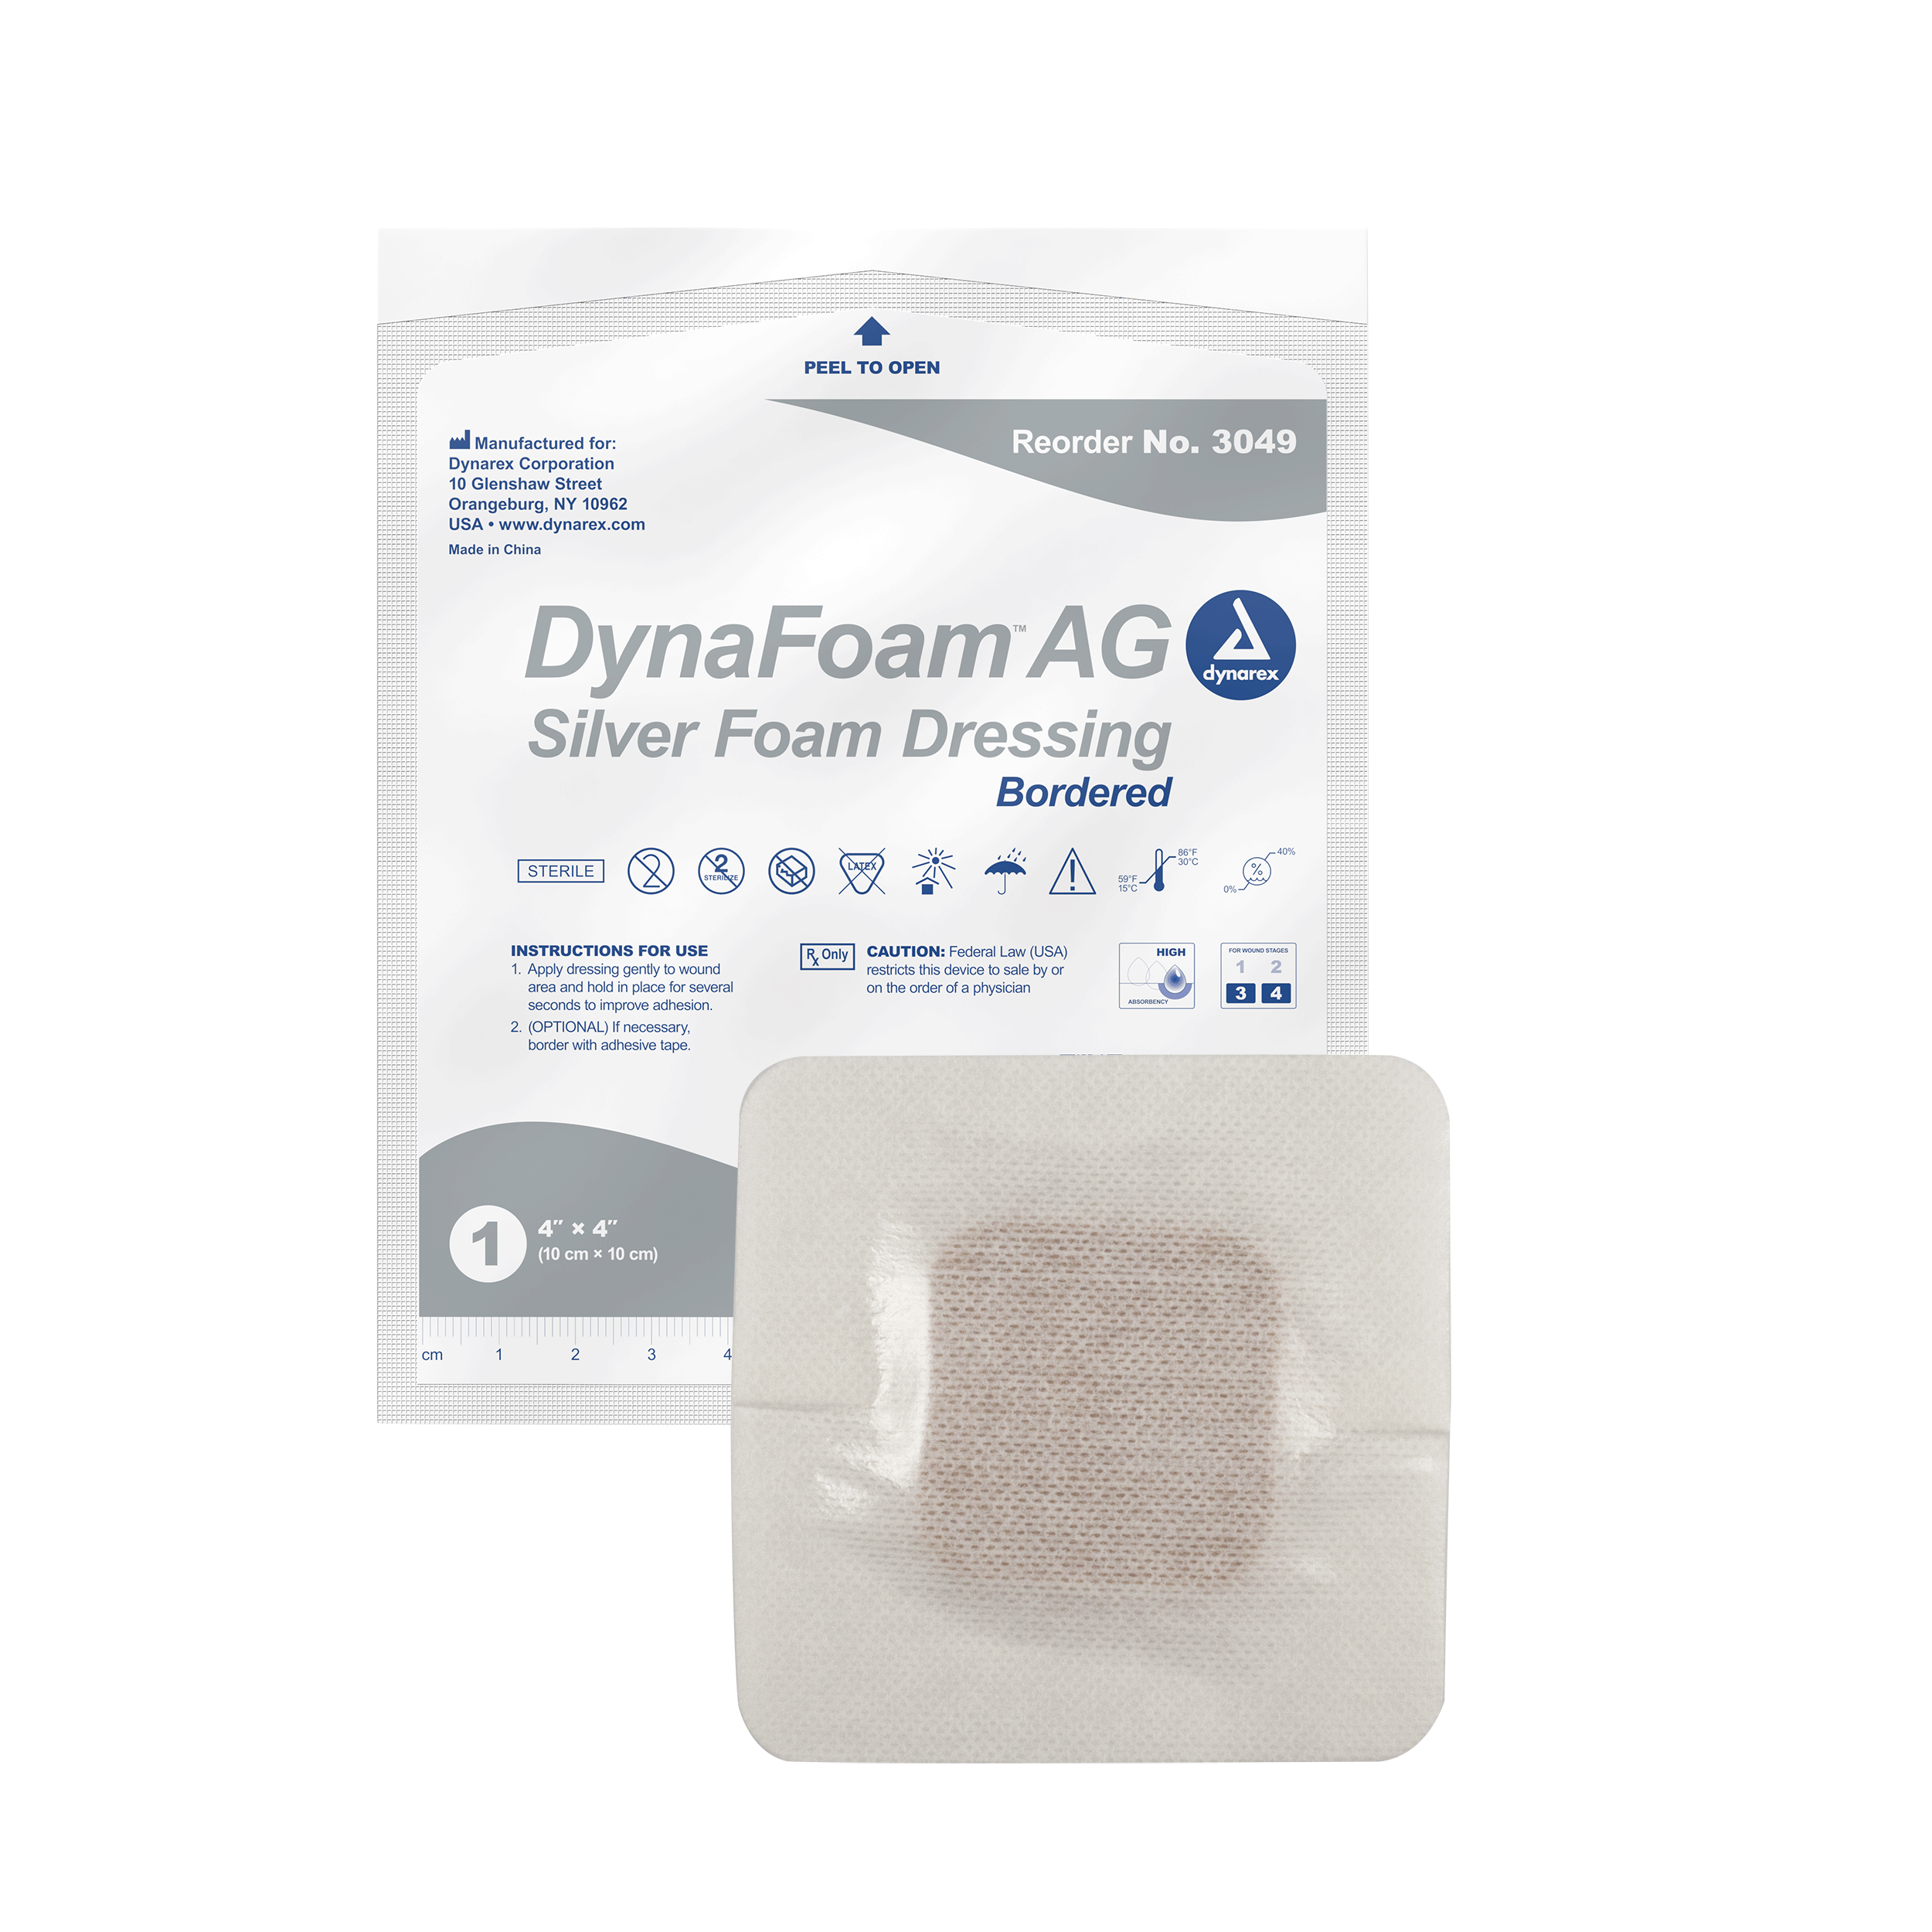 DynaFoam™ AG Bordered Silver Foam Dressing - 4